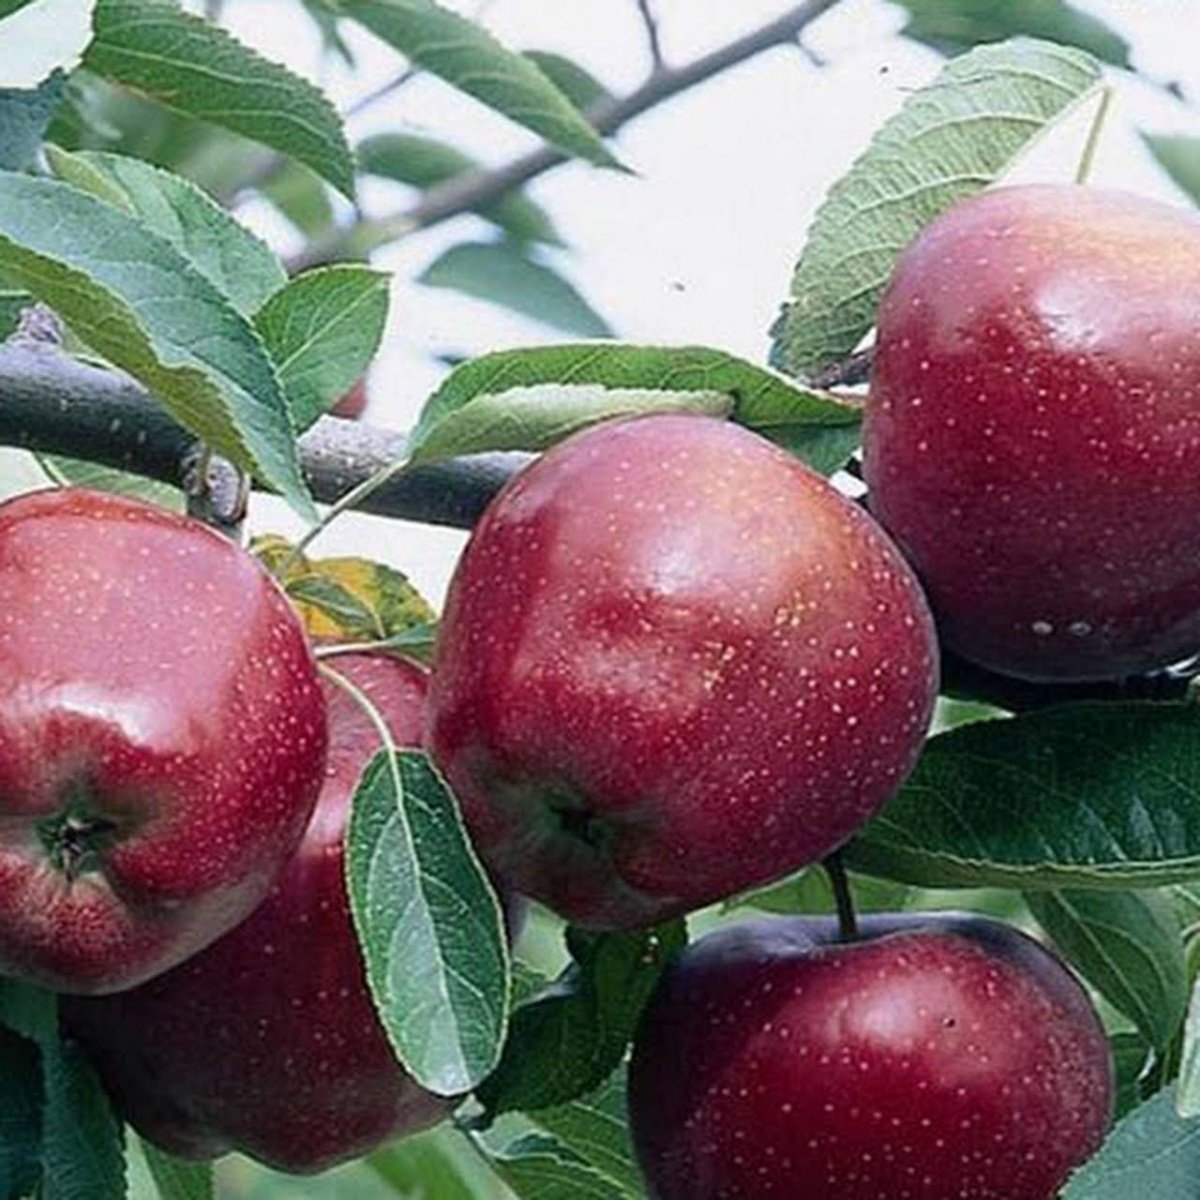 Яблоко багряное описание и фото